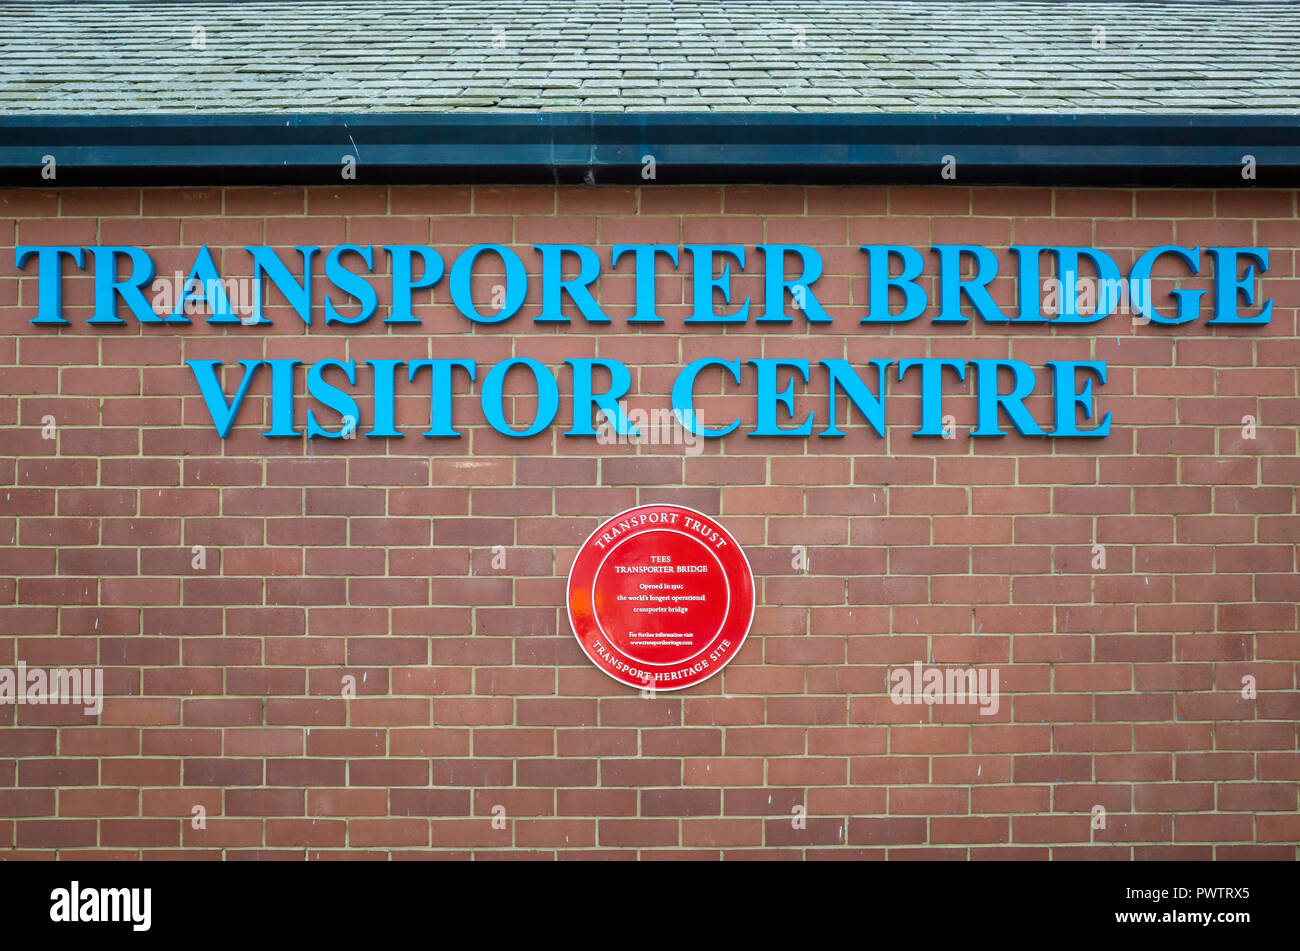 Transporteur de Middlesbrough Visitor Center et une plaque rouge pour un site du patrimoine mondial de transport Banque D'Images